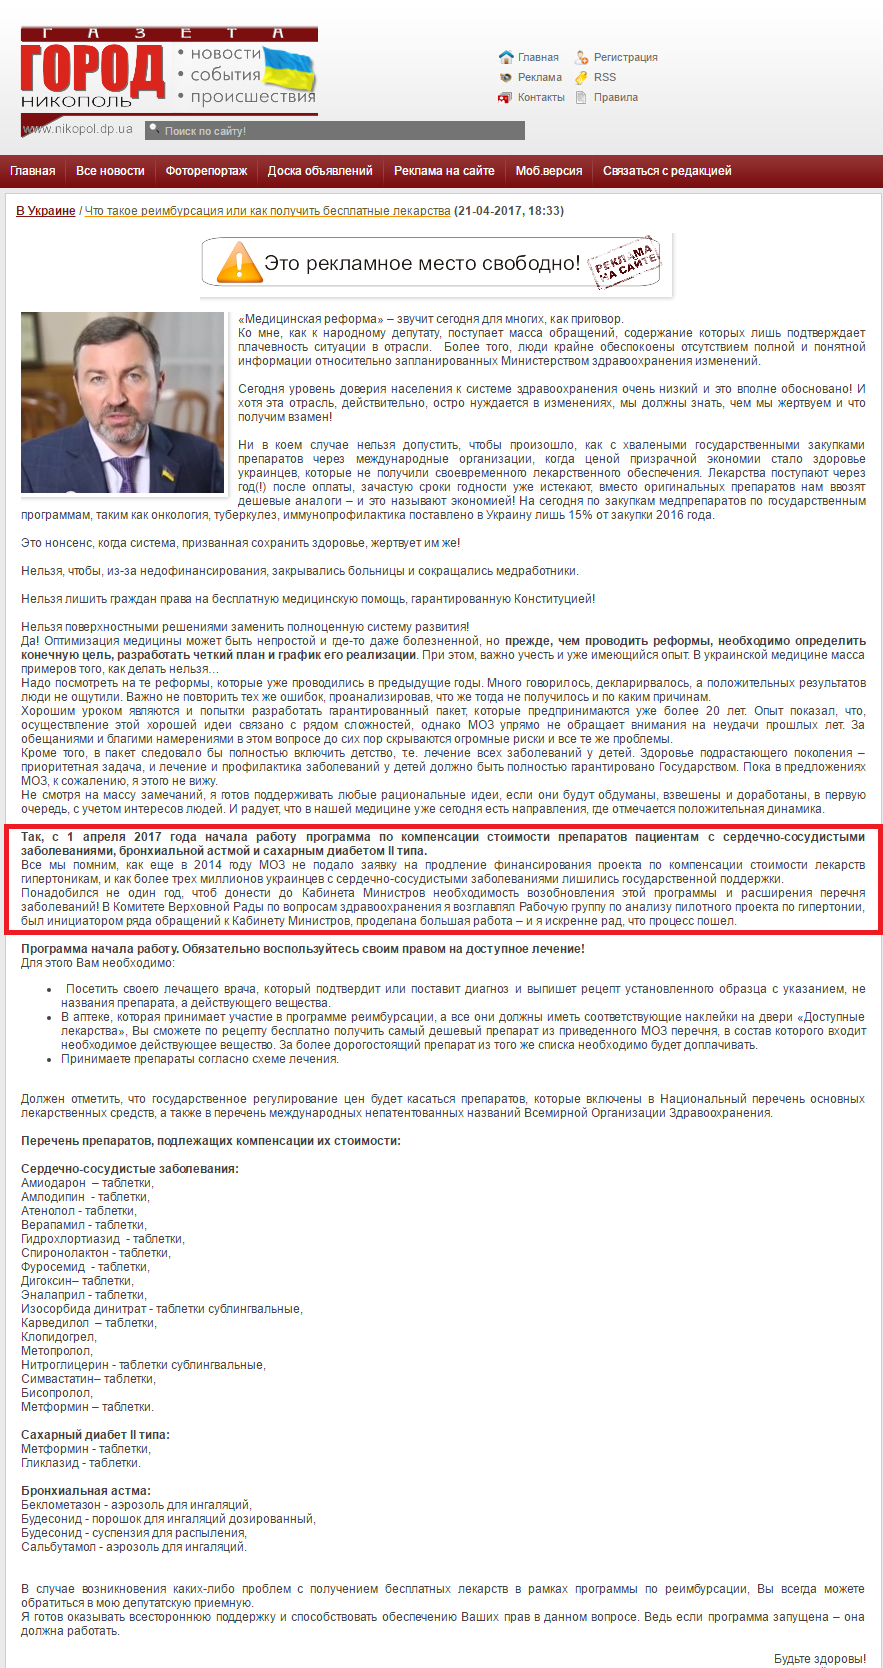 http://nikopol.dp.ua/7159-chto-takoe-reimbursaciya-ili-kak-poluchit-besplatnye-lekarstva.html